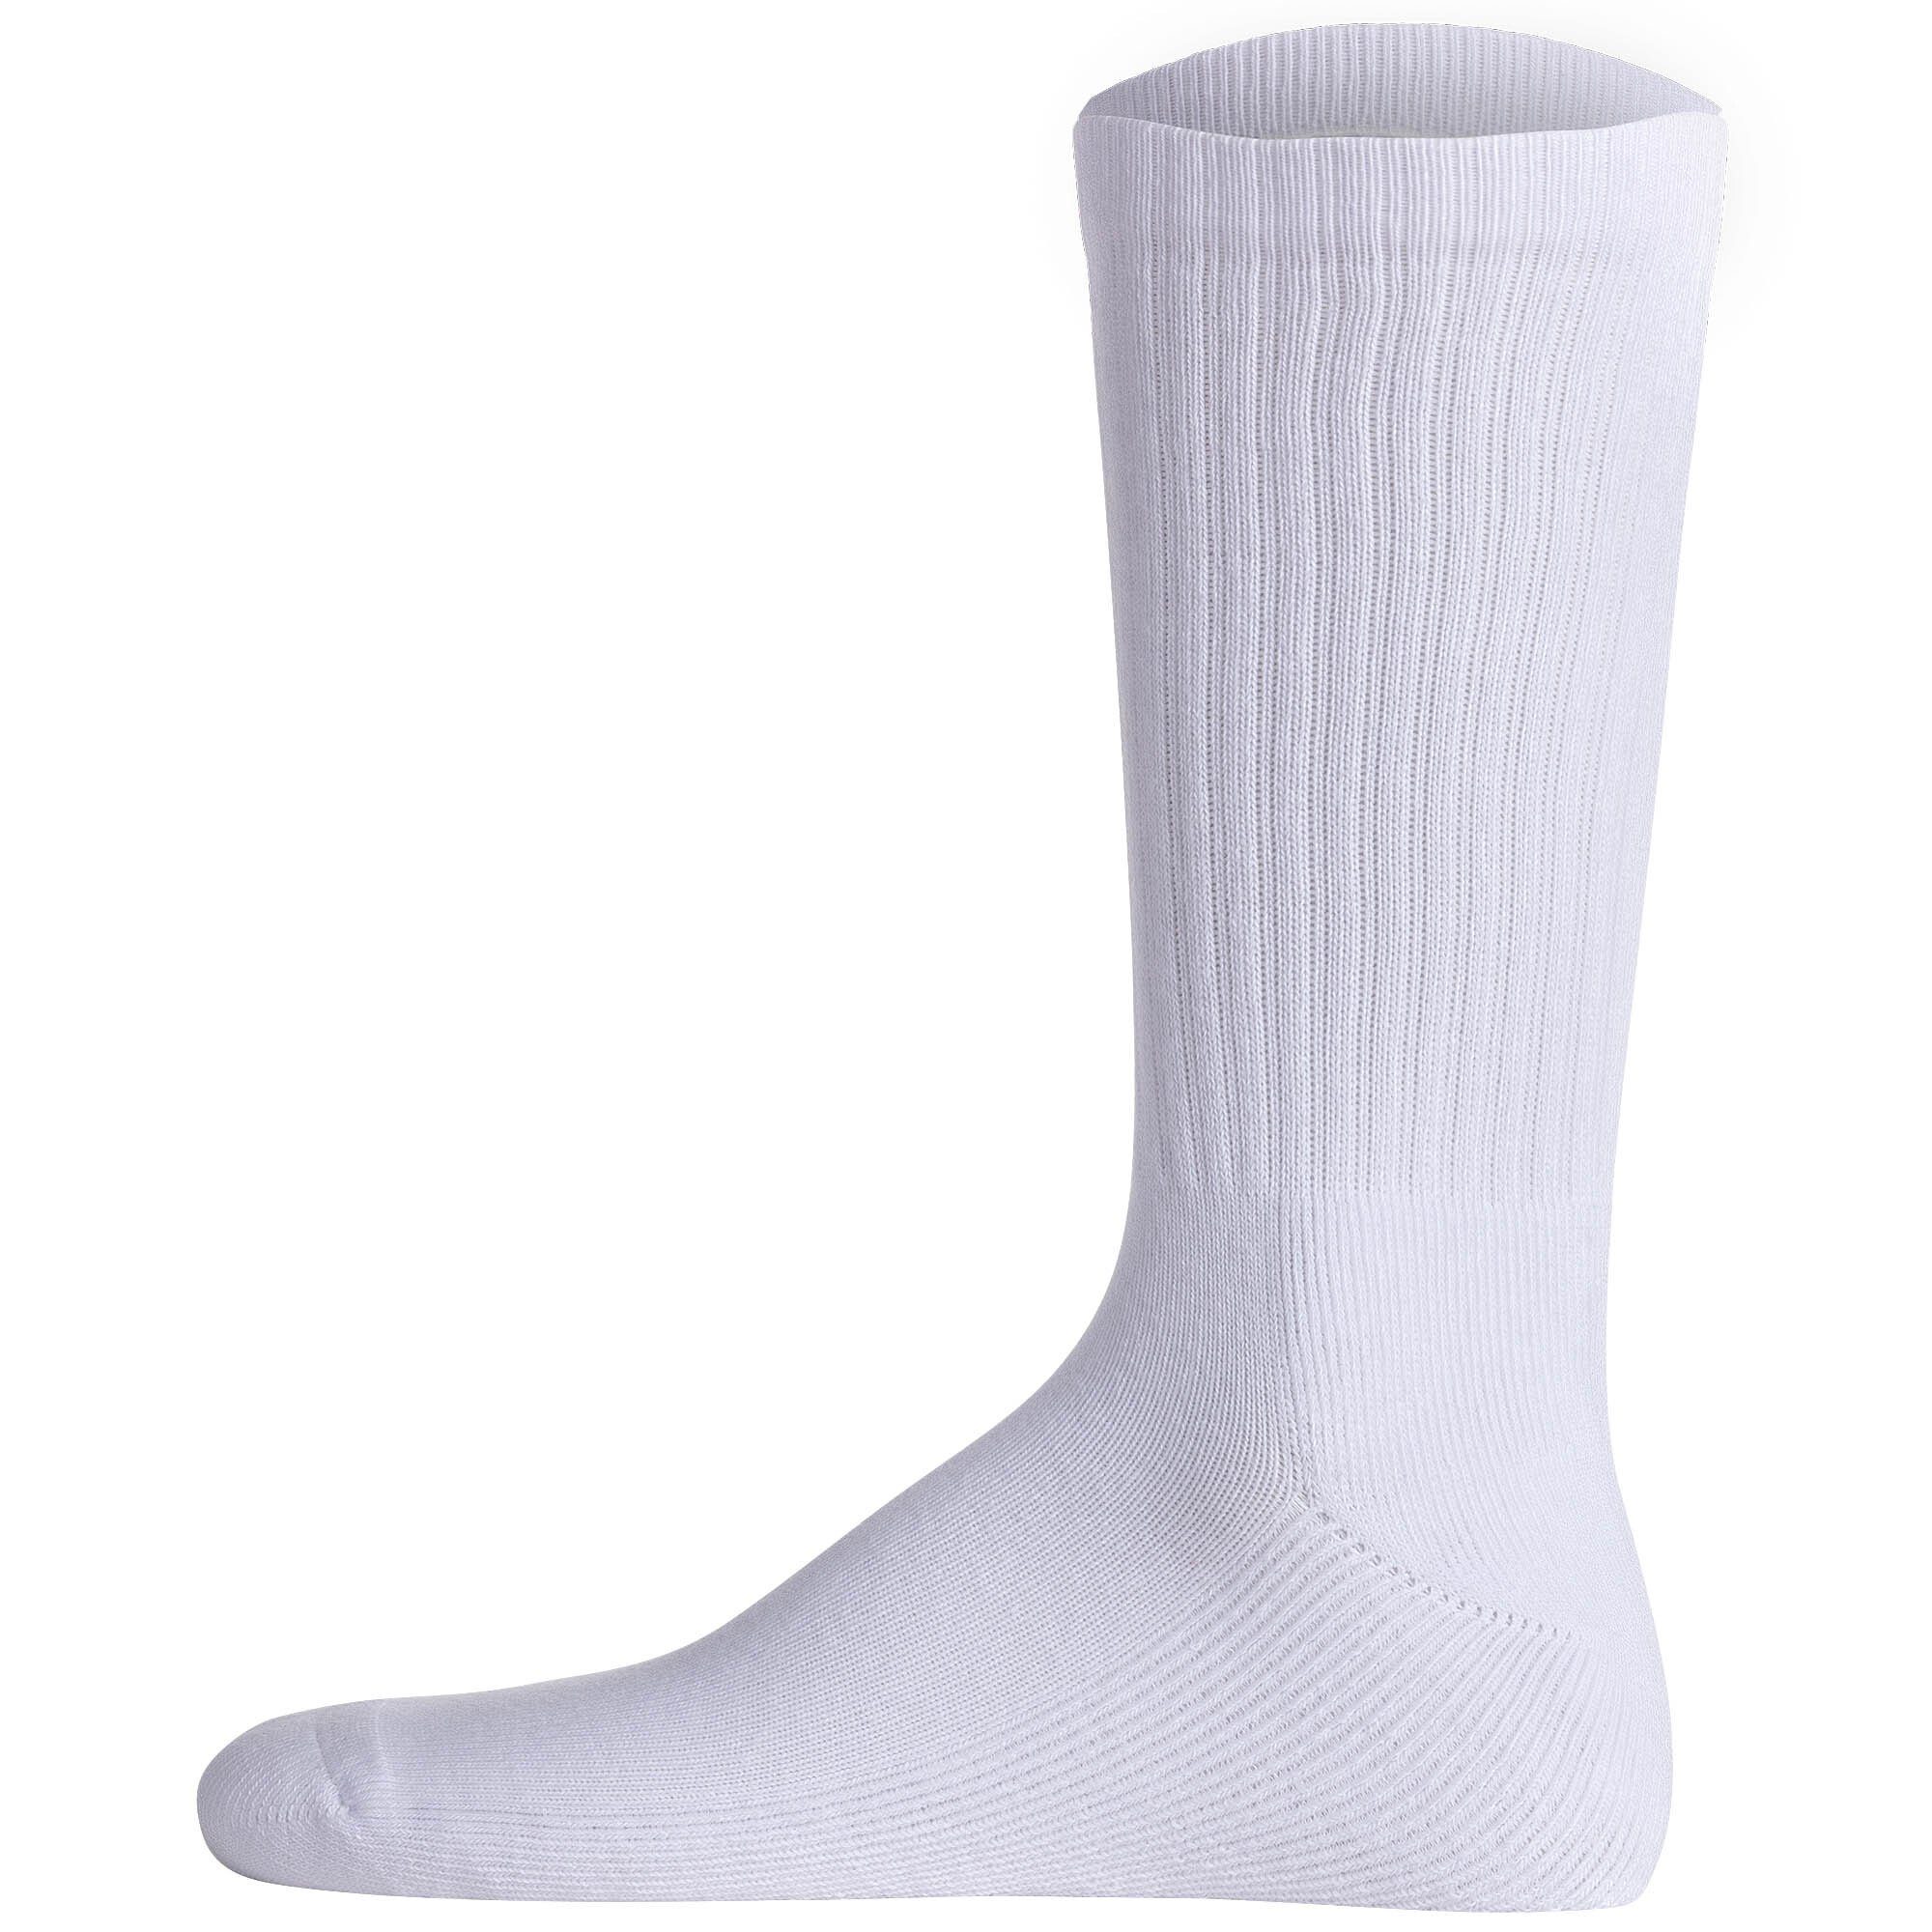 Kurzsocken Weiß/Grau/Dunkelblau Tennissocken Unisex 3er Socken, Pack Lacoste -